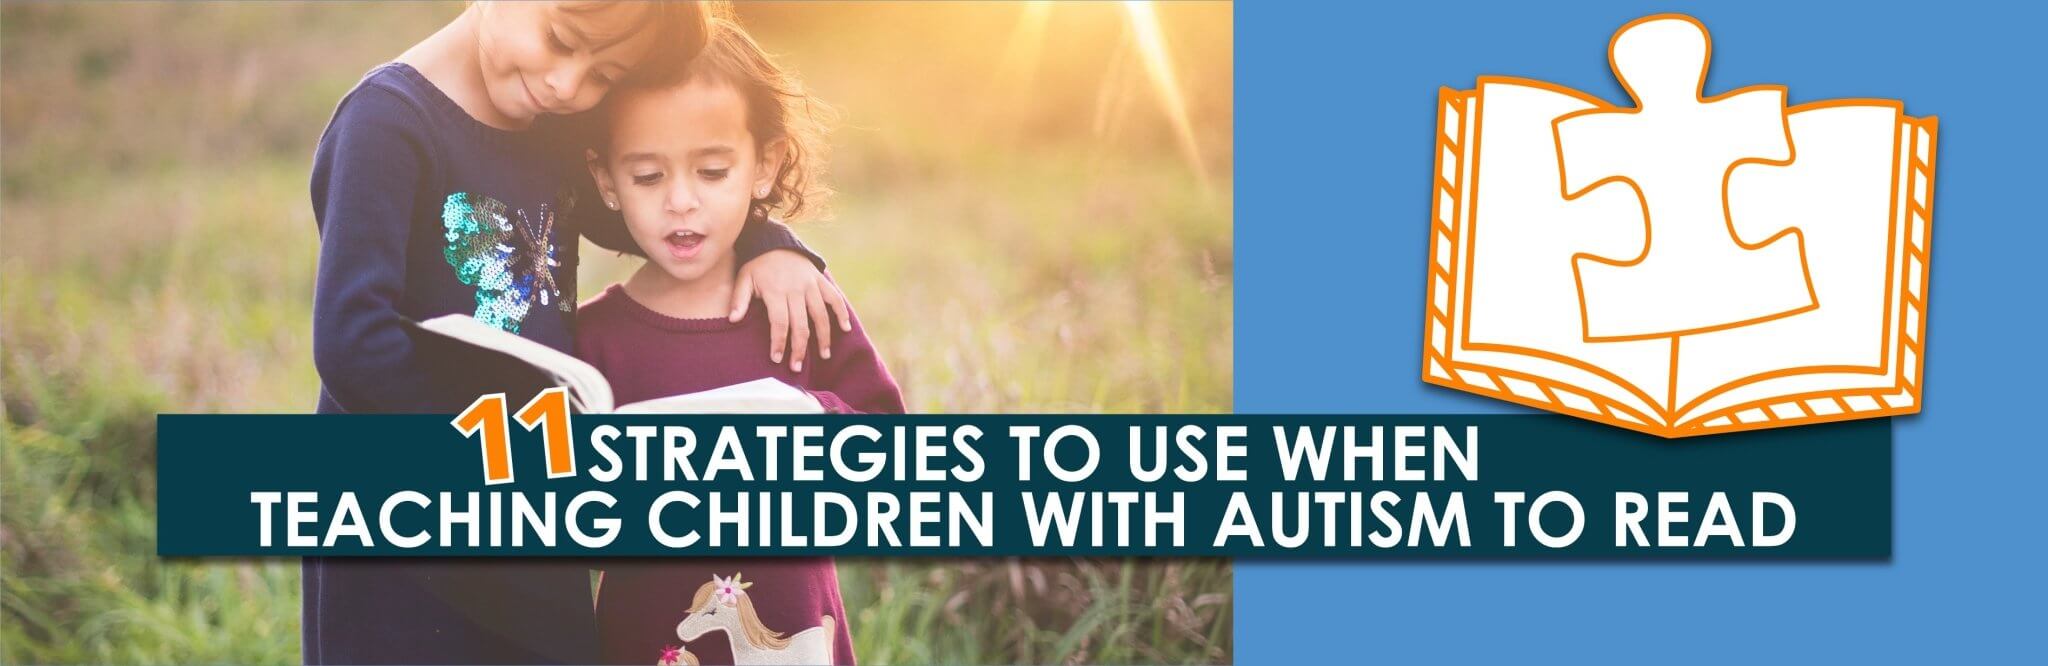 11 estrategias para usar cuando se enseña a leer a niños con autismo